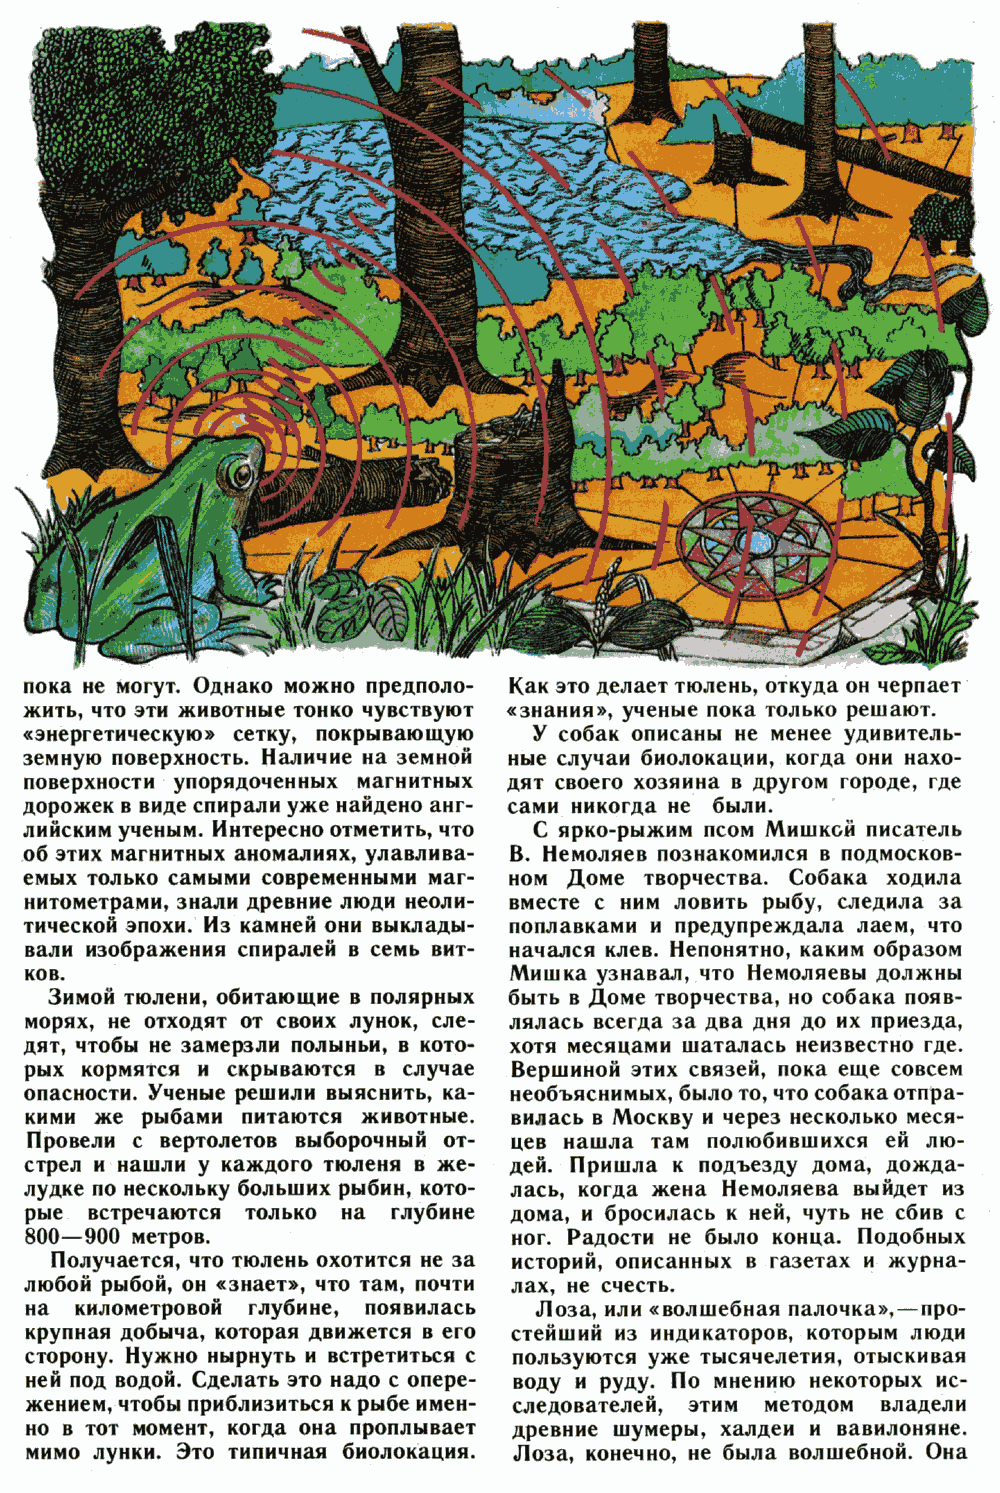 Загадки биолокации. Ю. Симаков. Юный натуралист, 1989, №1, с.12-15. Фотокопия №2